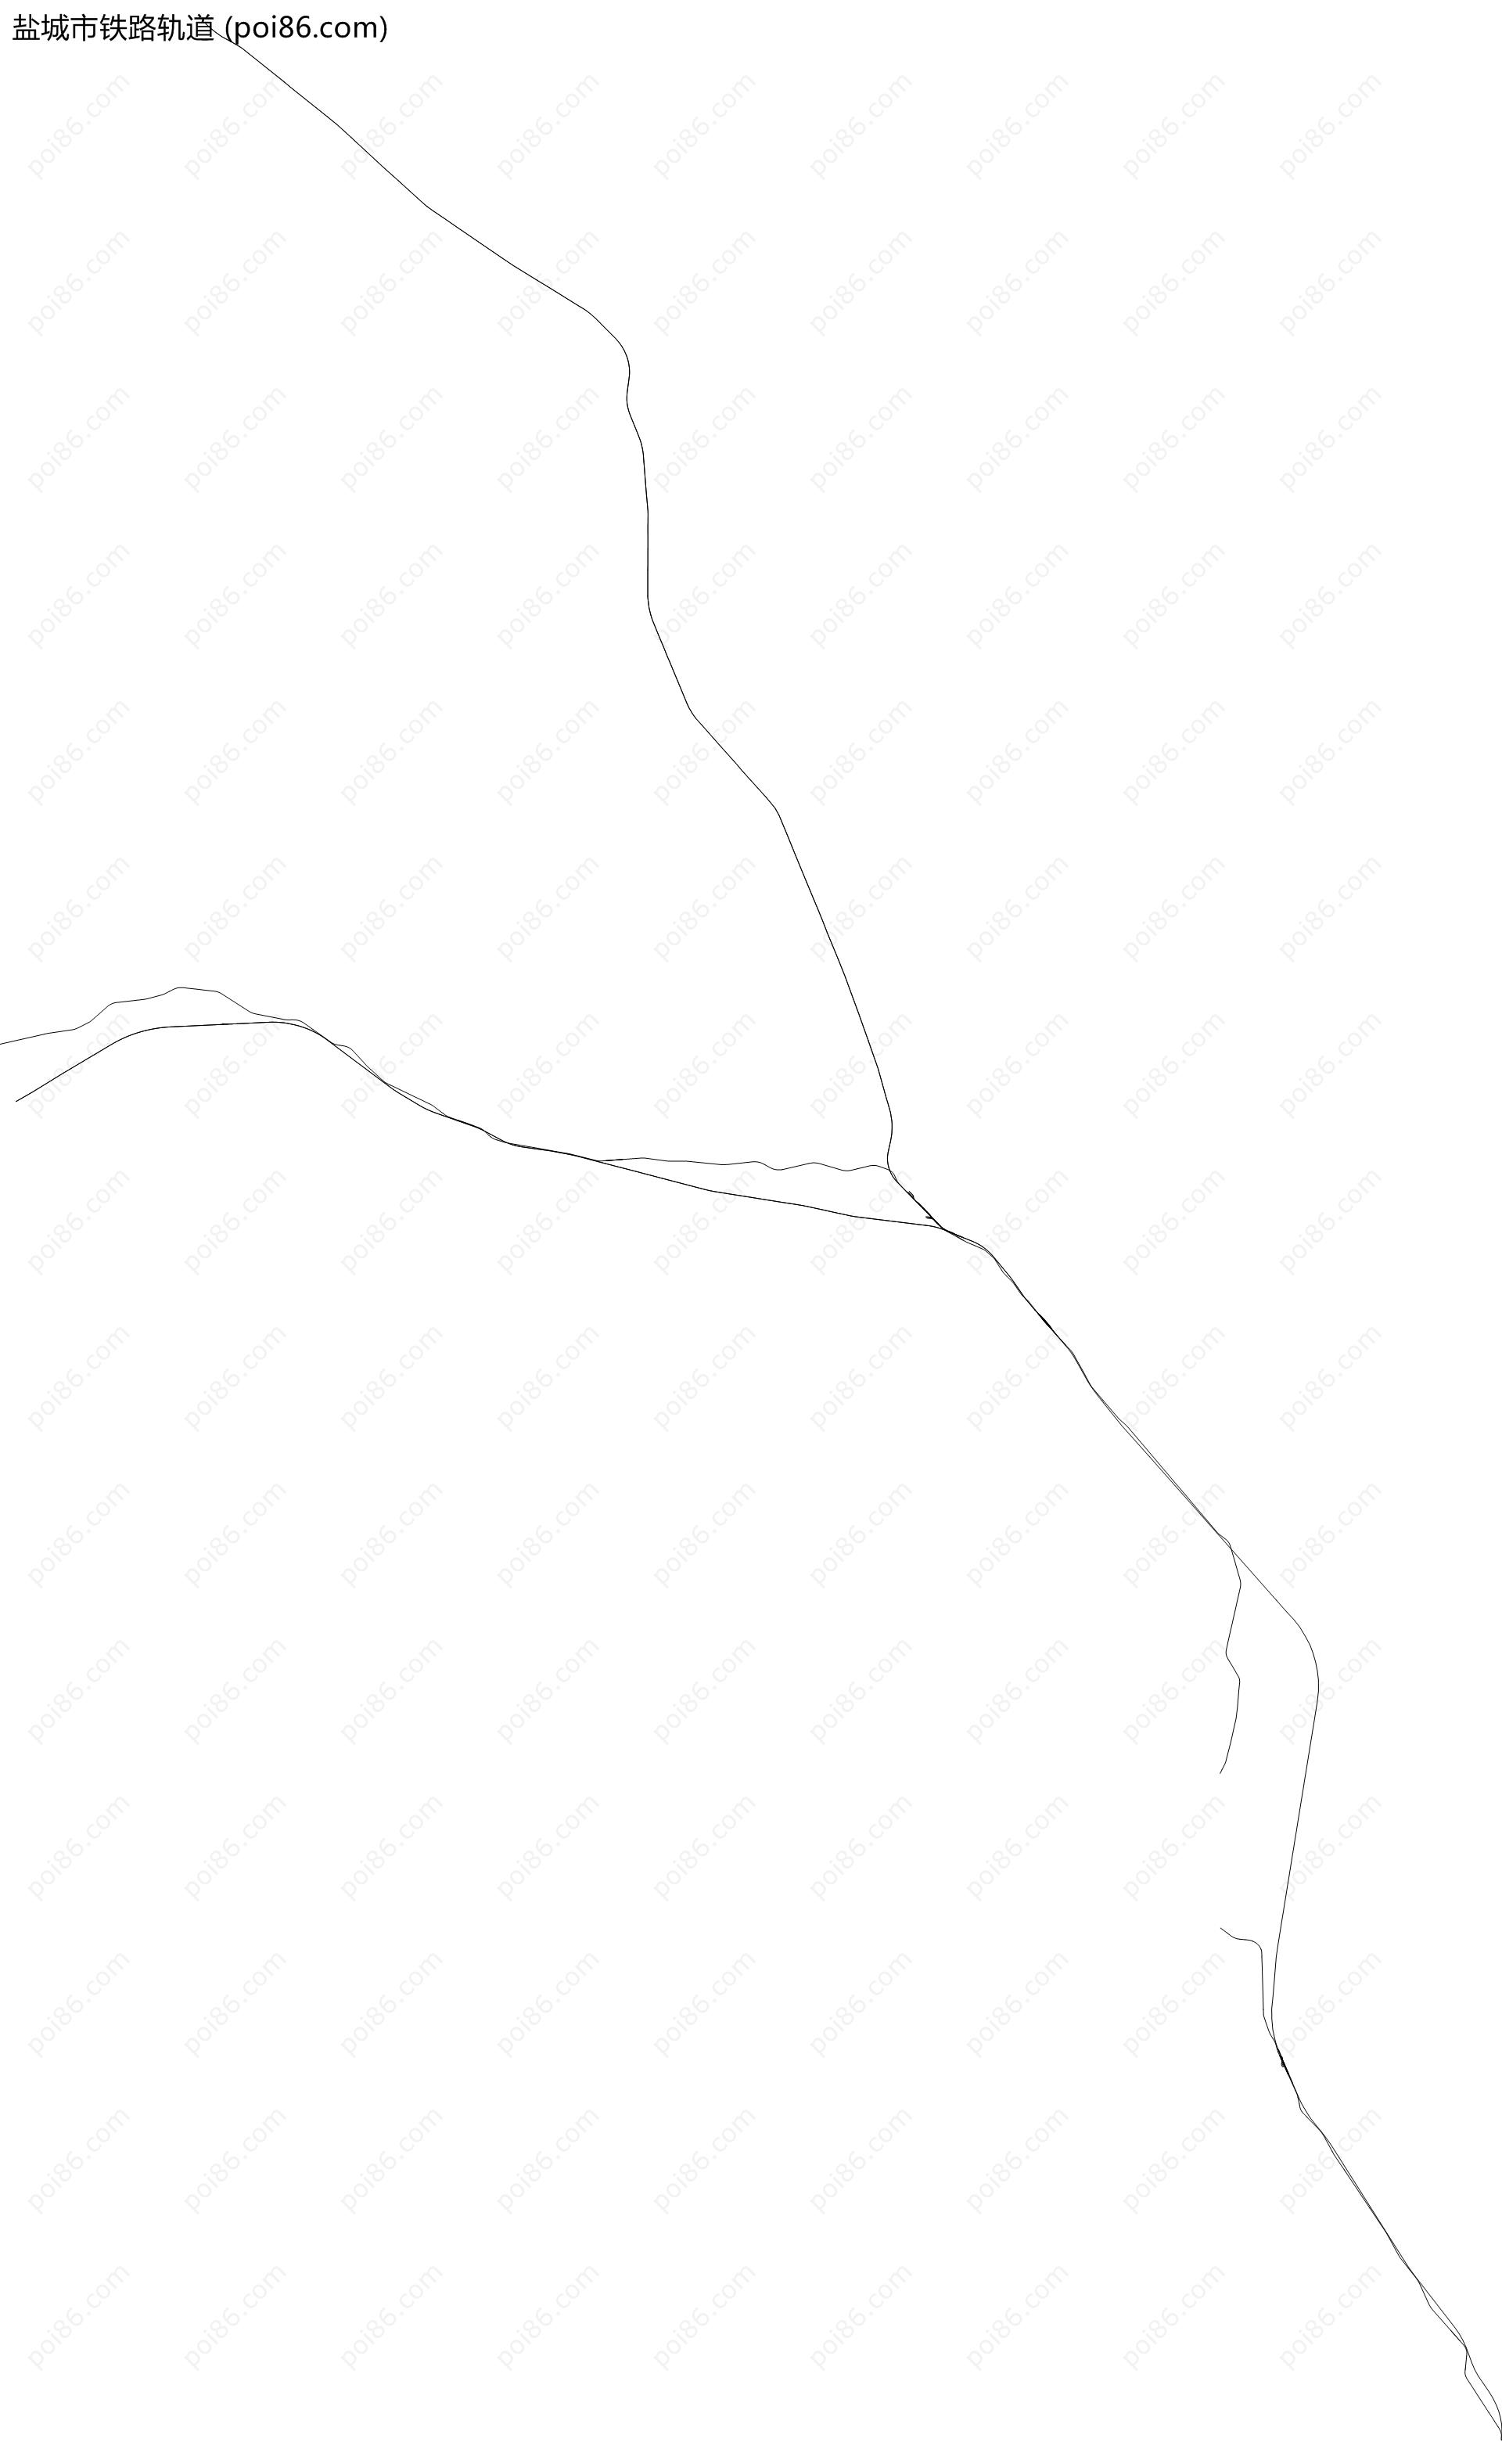 盐城市铁路轨道地图